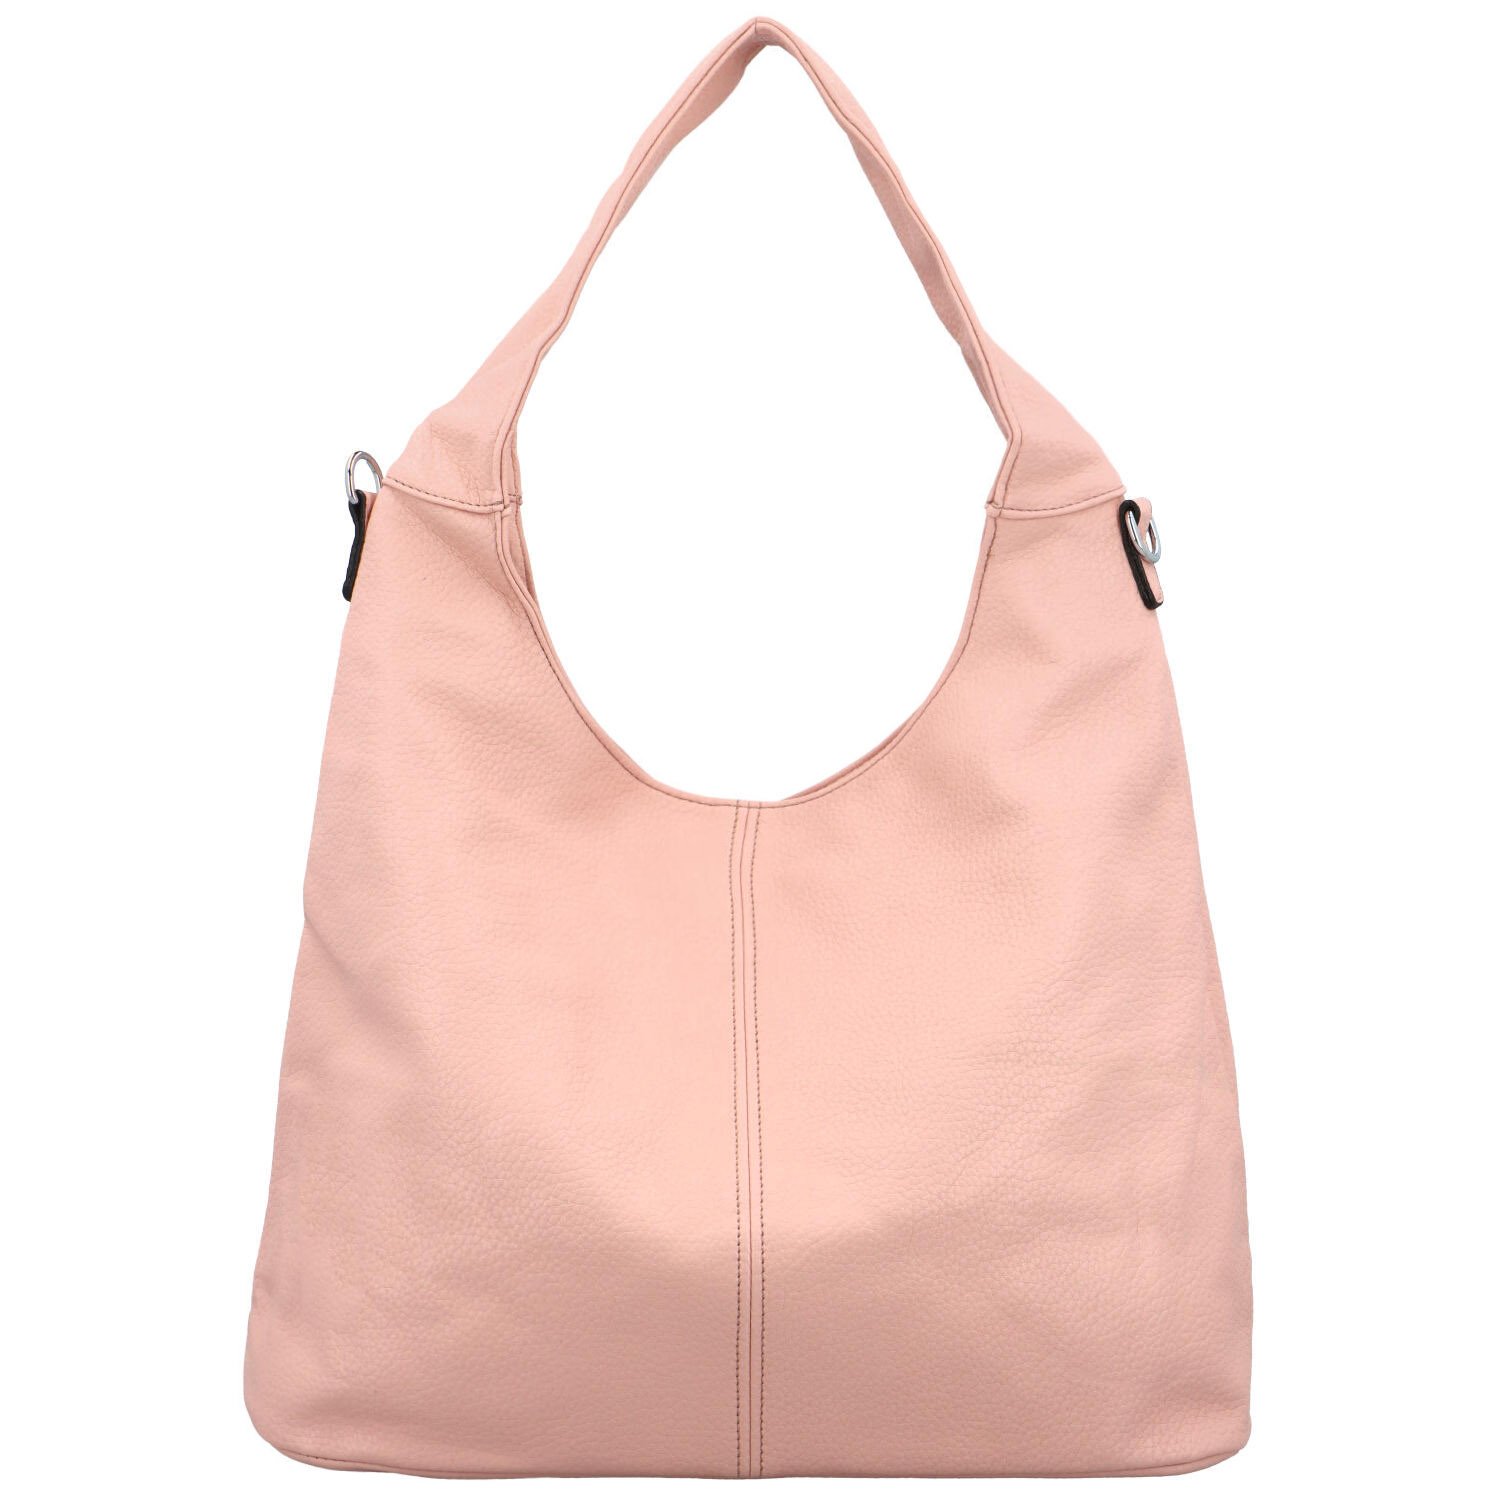 Dámská kabelka přes rameno růžová - Firenze Rachella